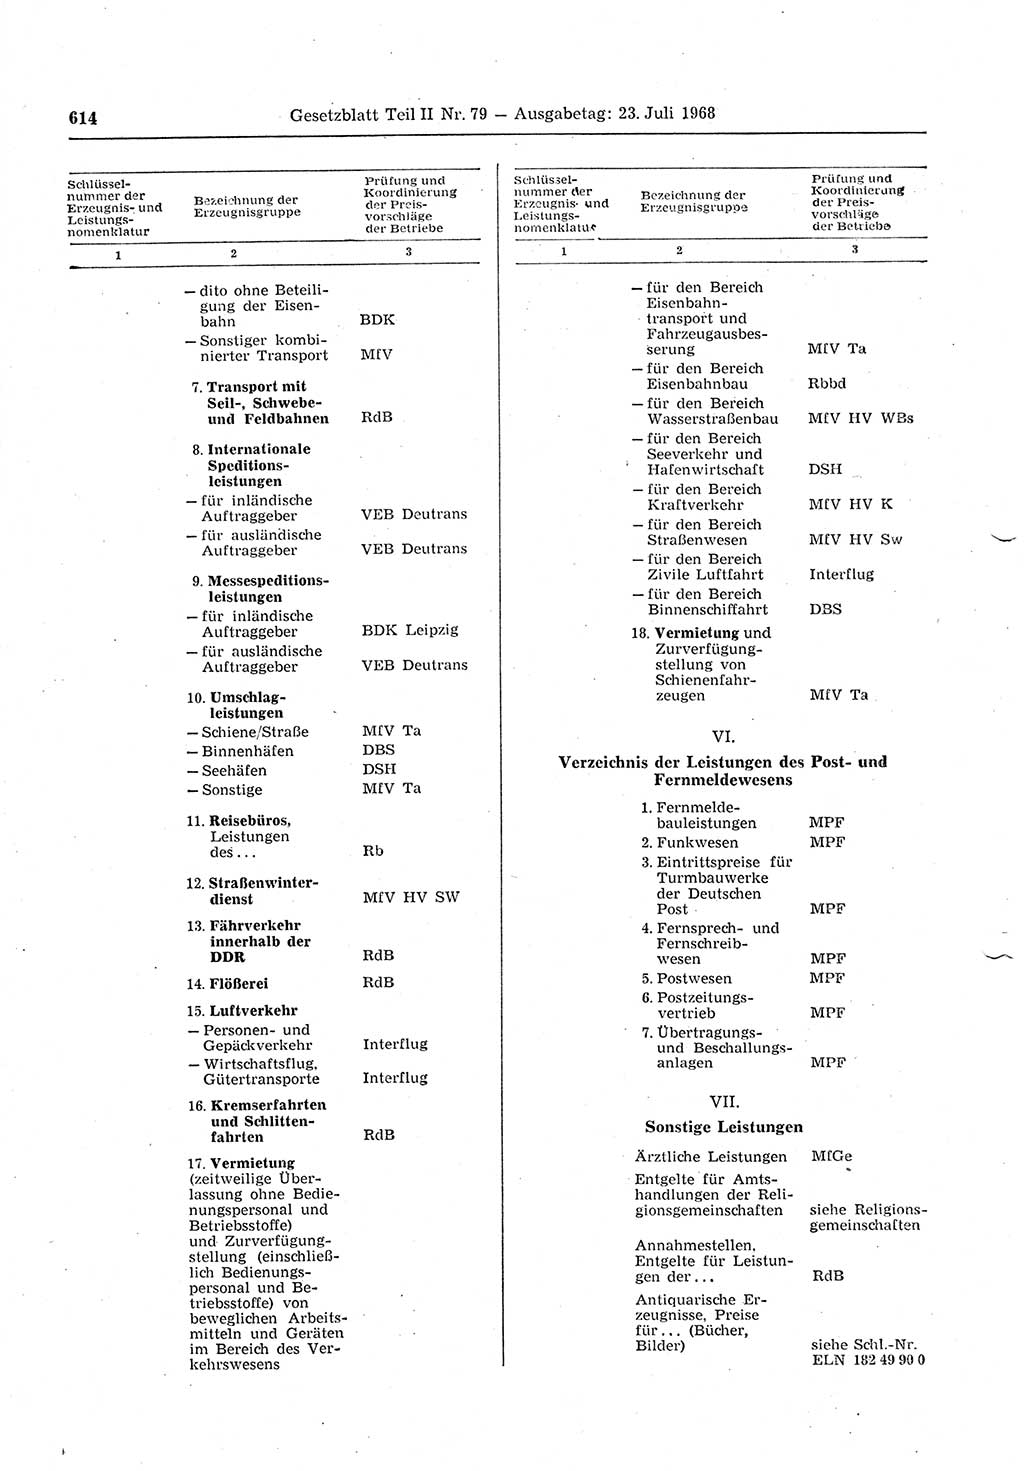 Gesetzblatt (GBl.) der Deutschen Demokratischen Republik (DDR) Teil ⅠⅠ 1968, Seite 614 (GBl. DDR ⅠⅠ 1968, S. 614)